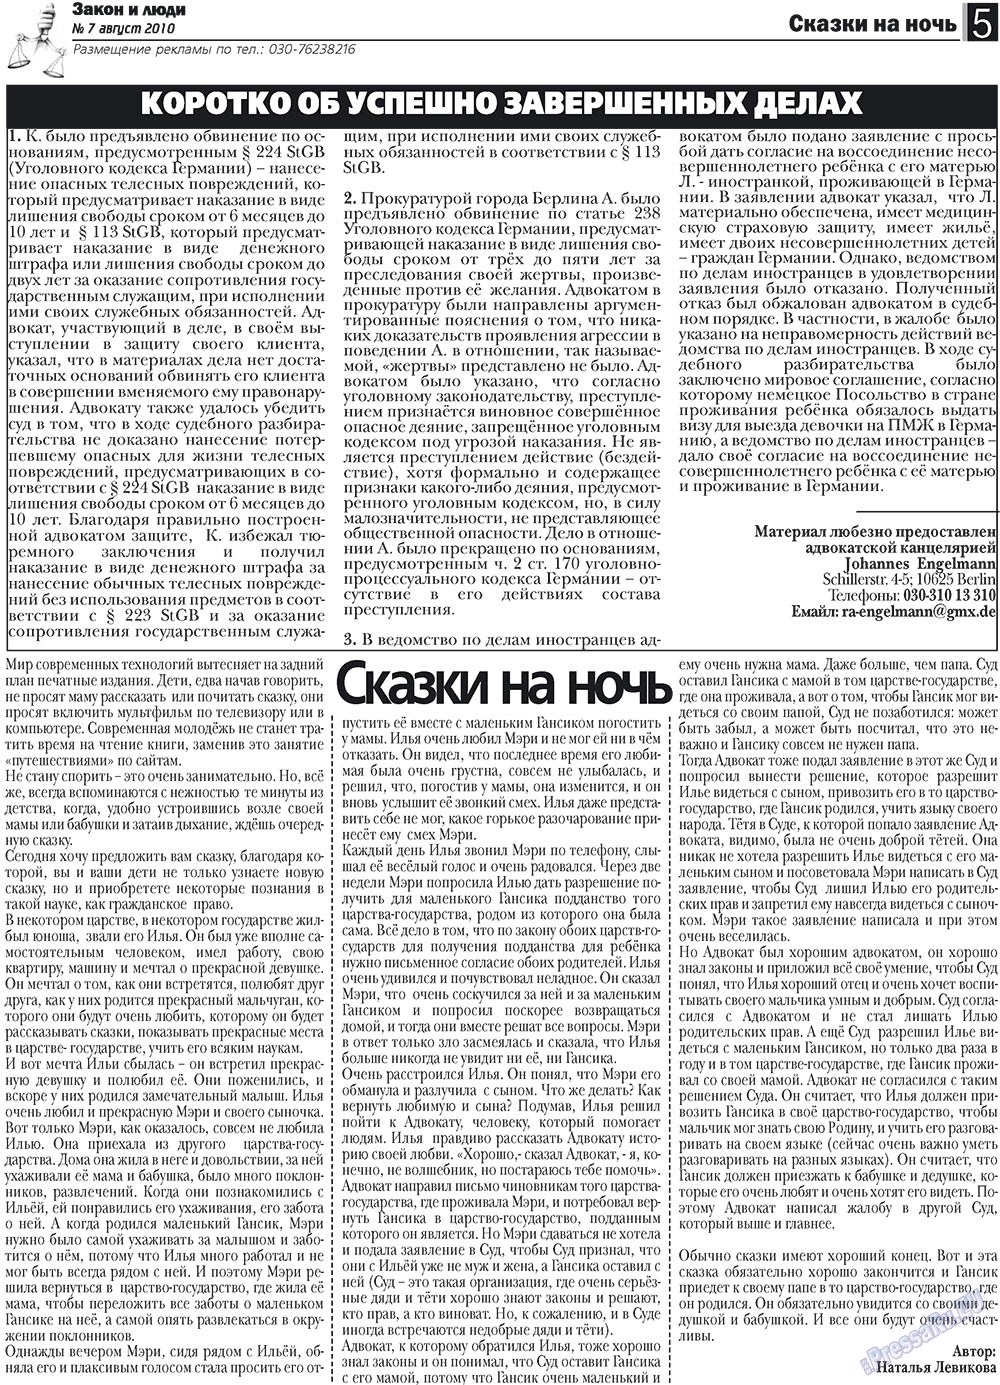 Закон и люди, газета. 2010 №7 стр.5